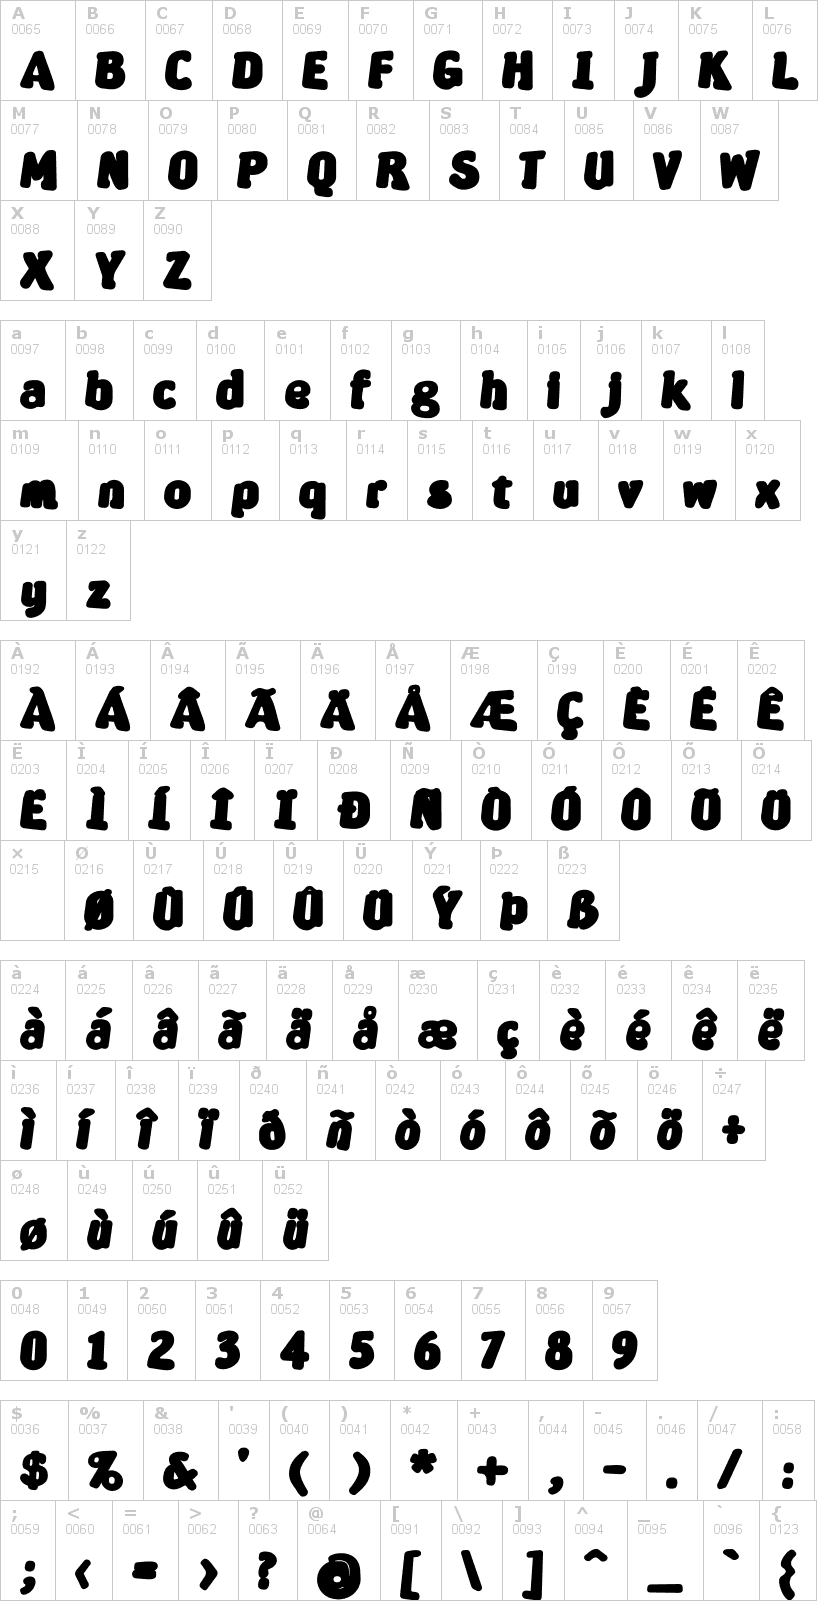 Lettere dell'alfabeto del font severina con le quali è possibile realizzare adesivi prespaziati